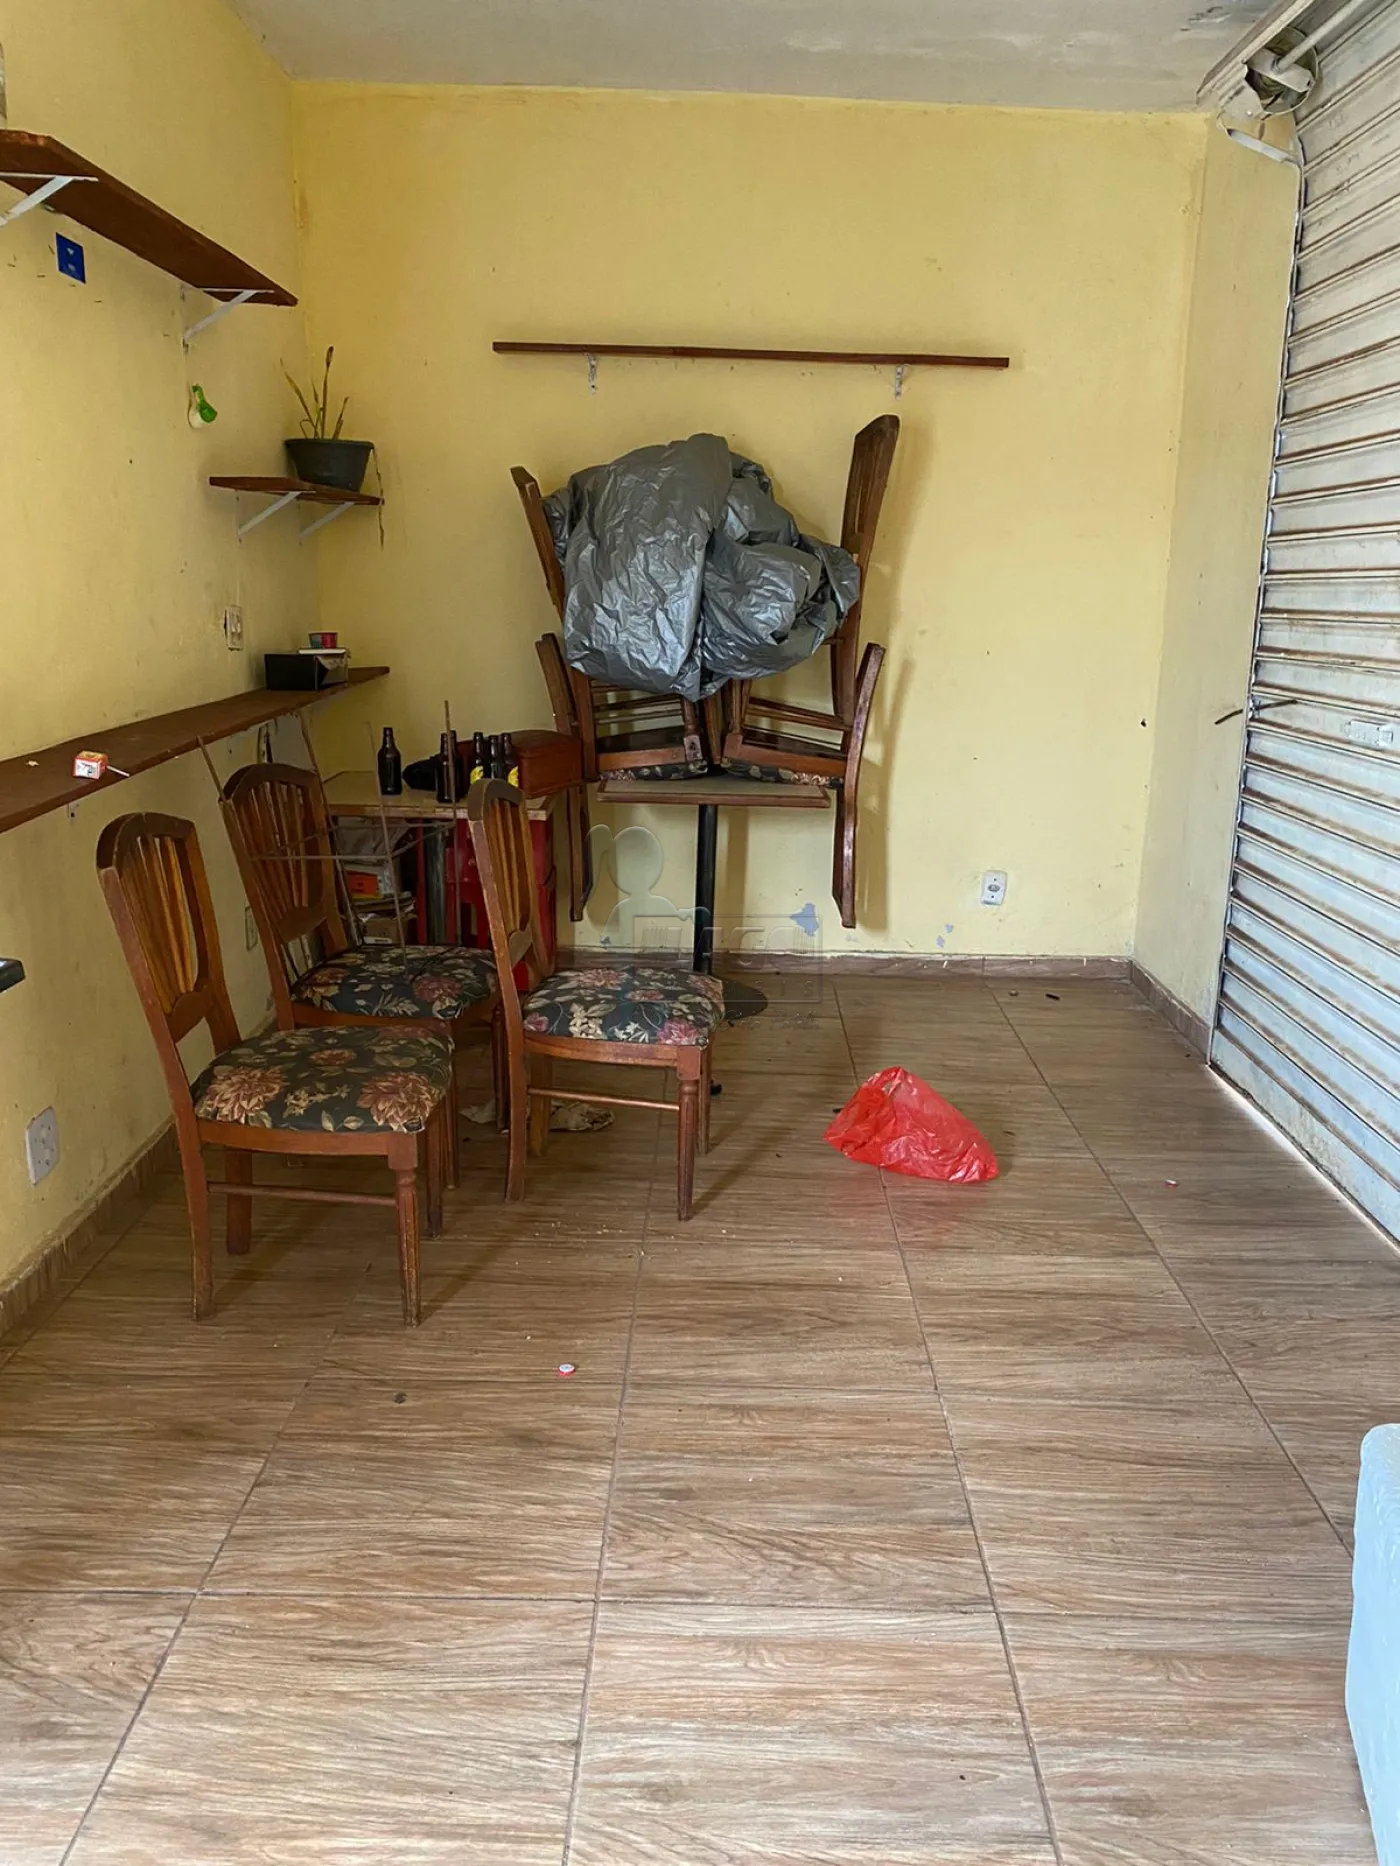 Comprar Casas / Padrão em Ribeirão Preto R$ 297.000,00 - Foto 12